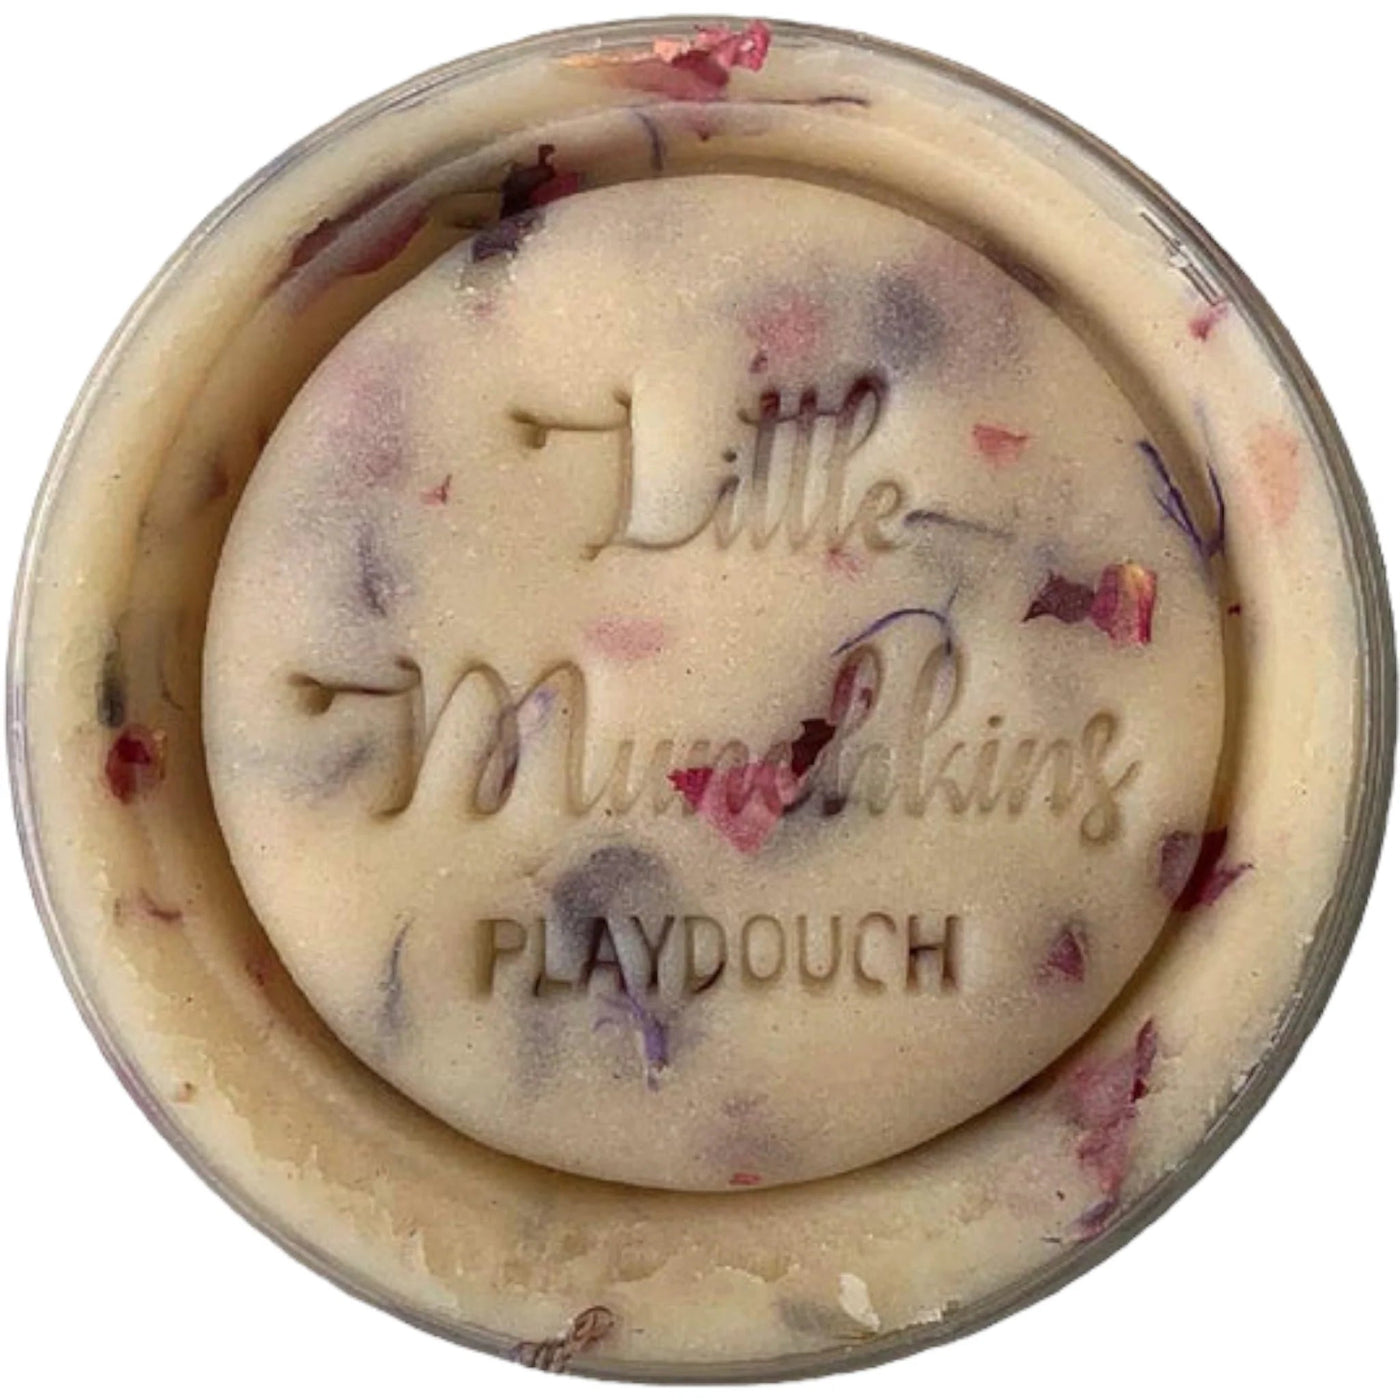 Mini Playdough Pots - Confetti Surprise 90g